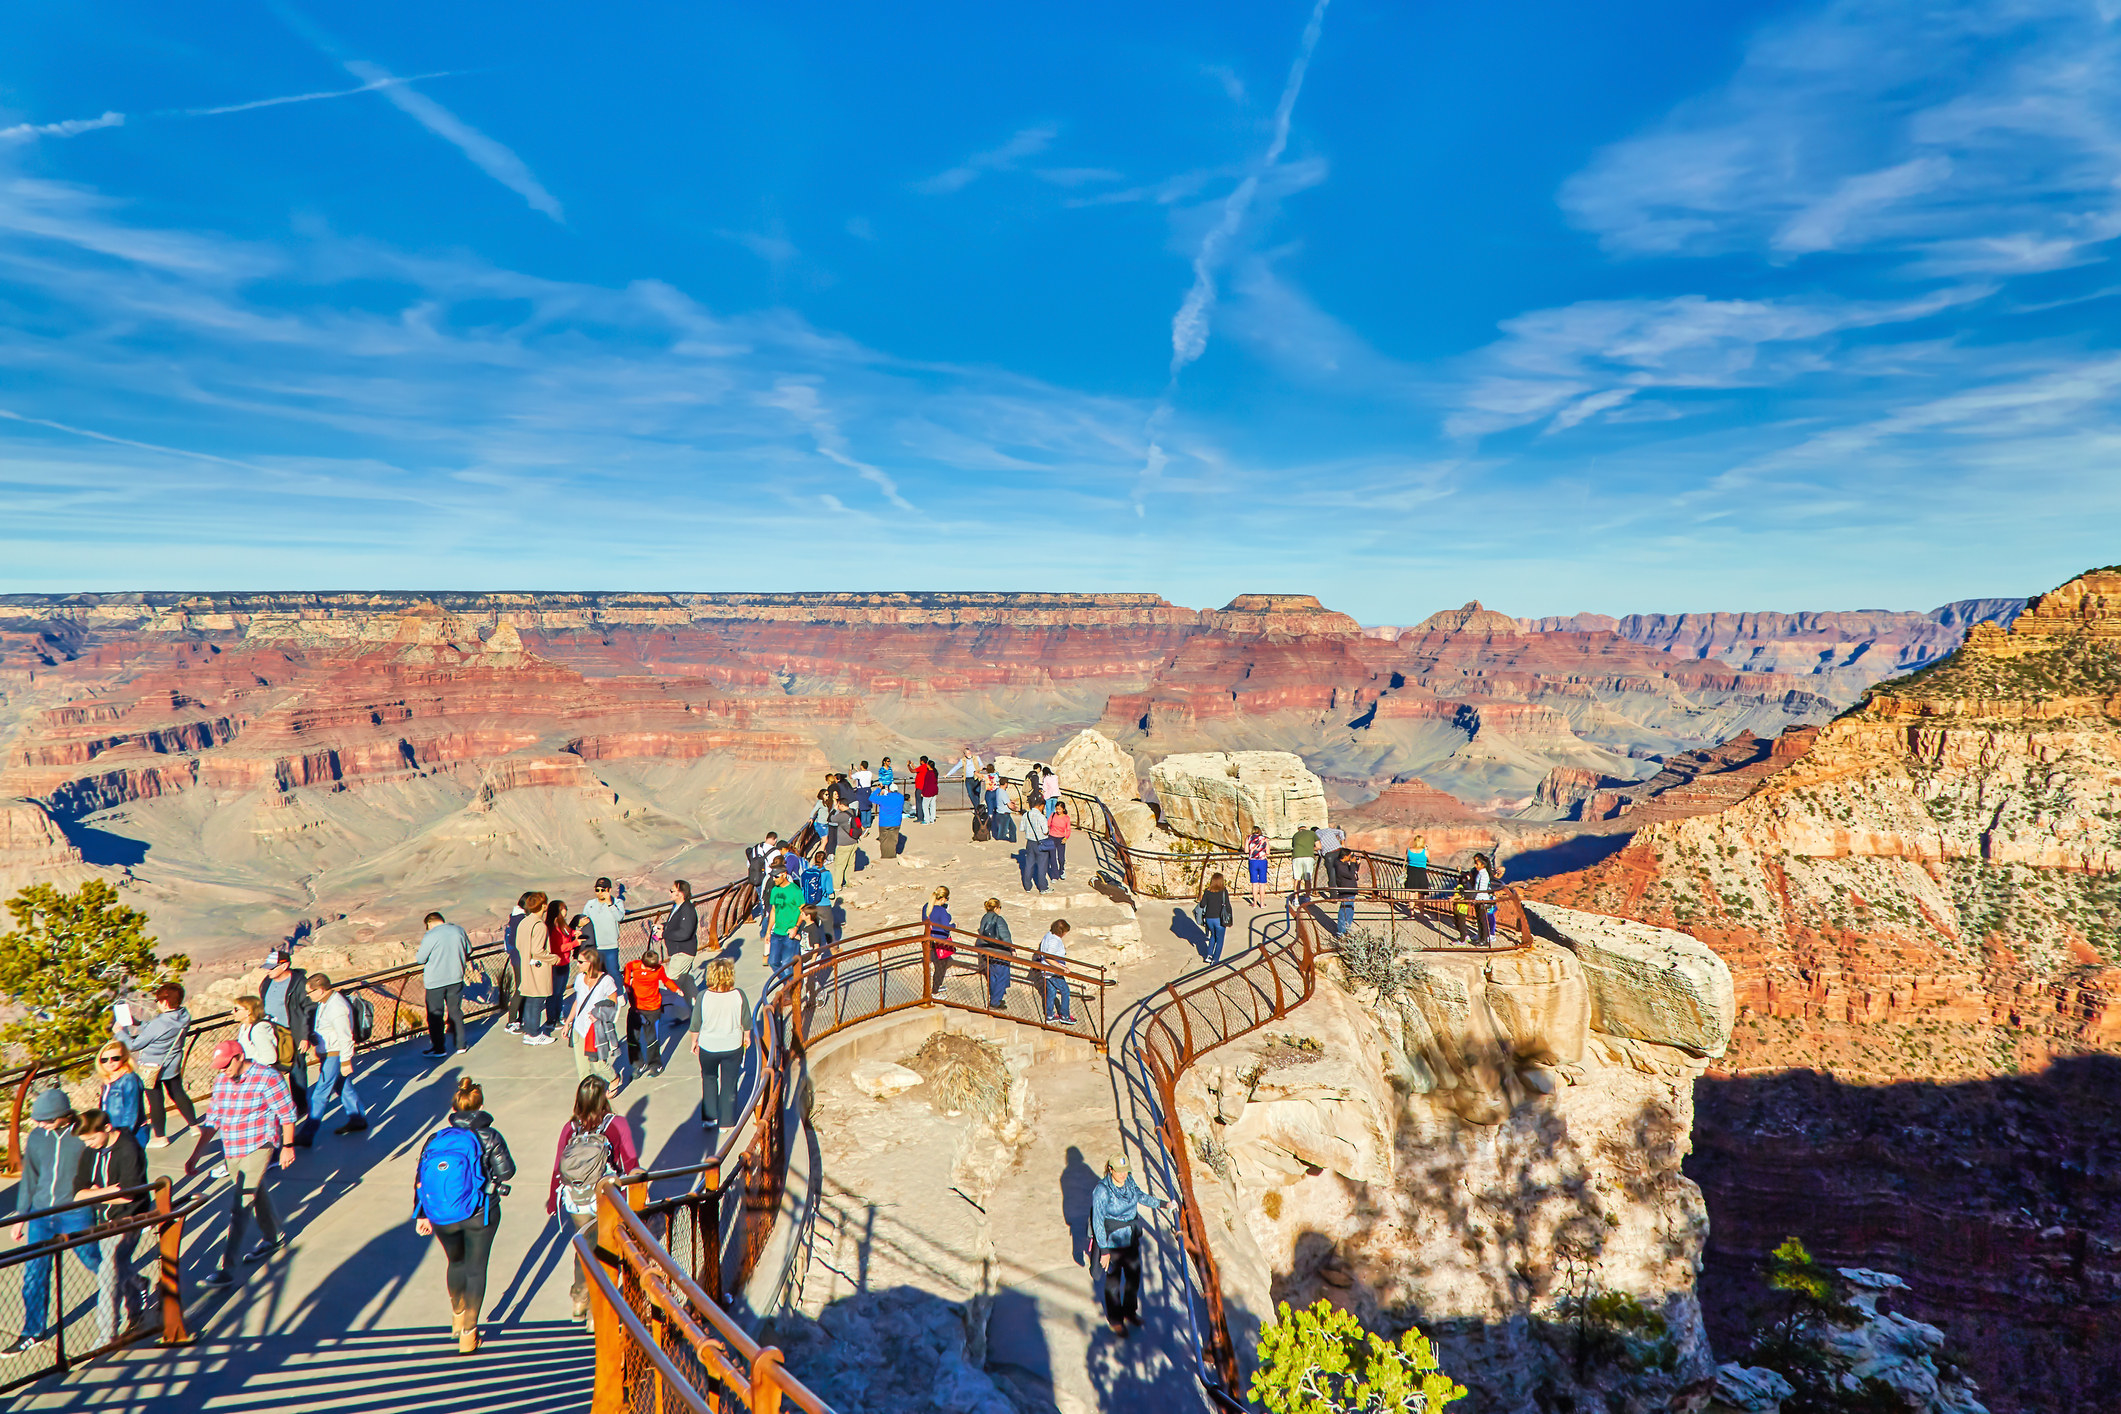 Visitors enjoying a viewpoint at the Grand Canyon in Arizona